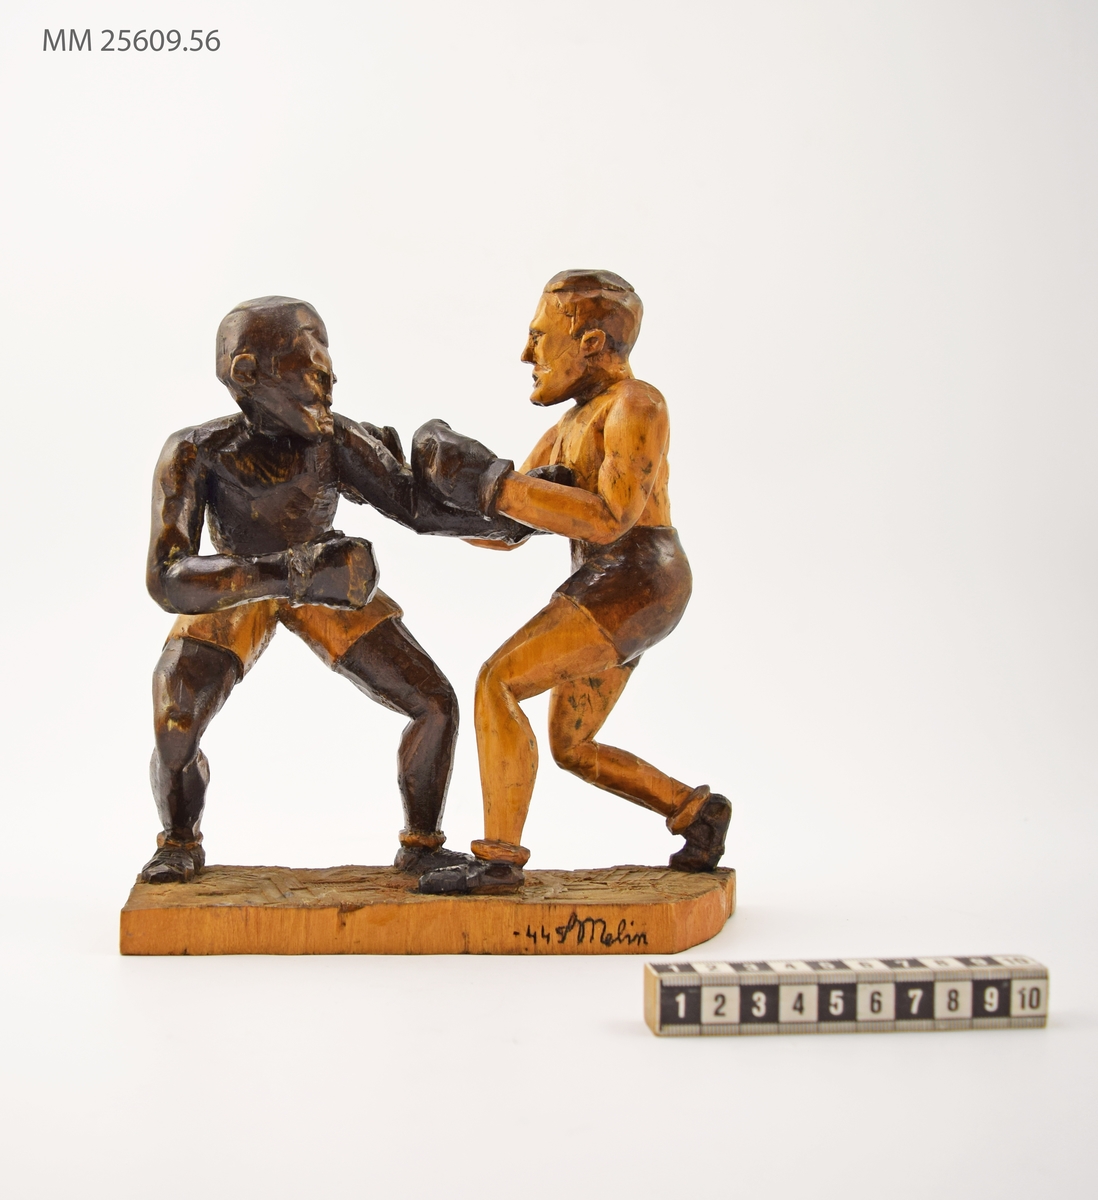 Statyett i snidat trä som föreställer två boxare i match mot varandra. I ögonblicket konstnären fångat dem får den vänstra boxaren in ett slag i magen på den högra. Boxarna är klädda i shorts och boxarskor. Statyetten fernissad.